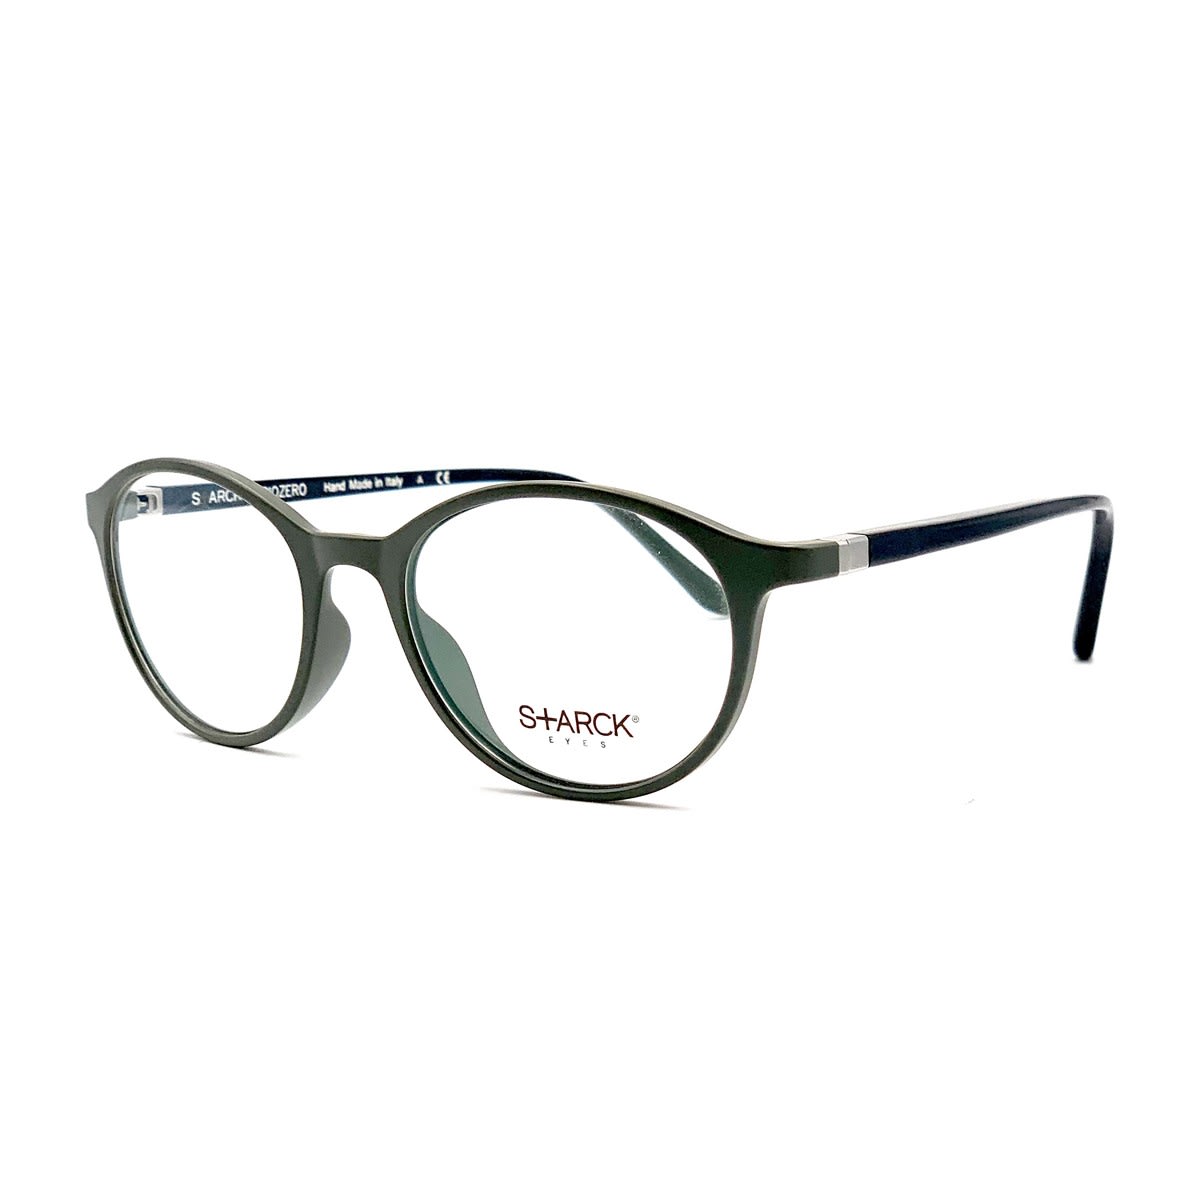 Philippe Starck 3007 Vista Glasses In Grigio